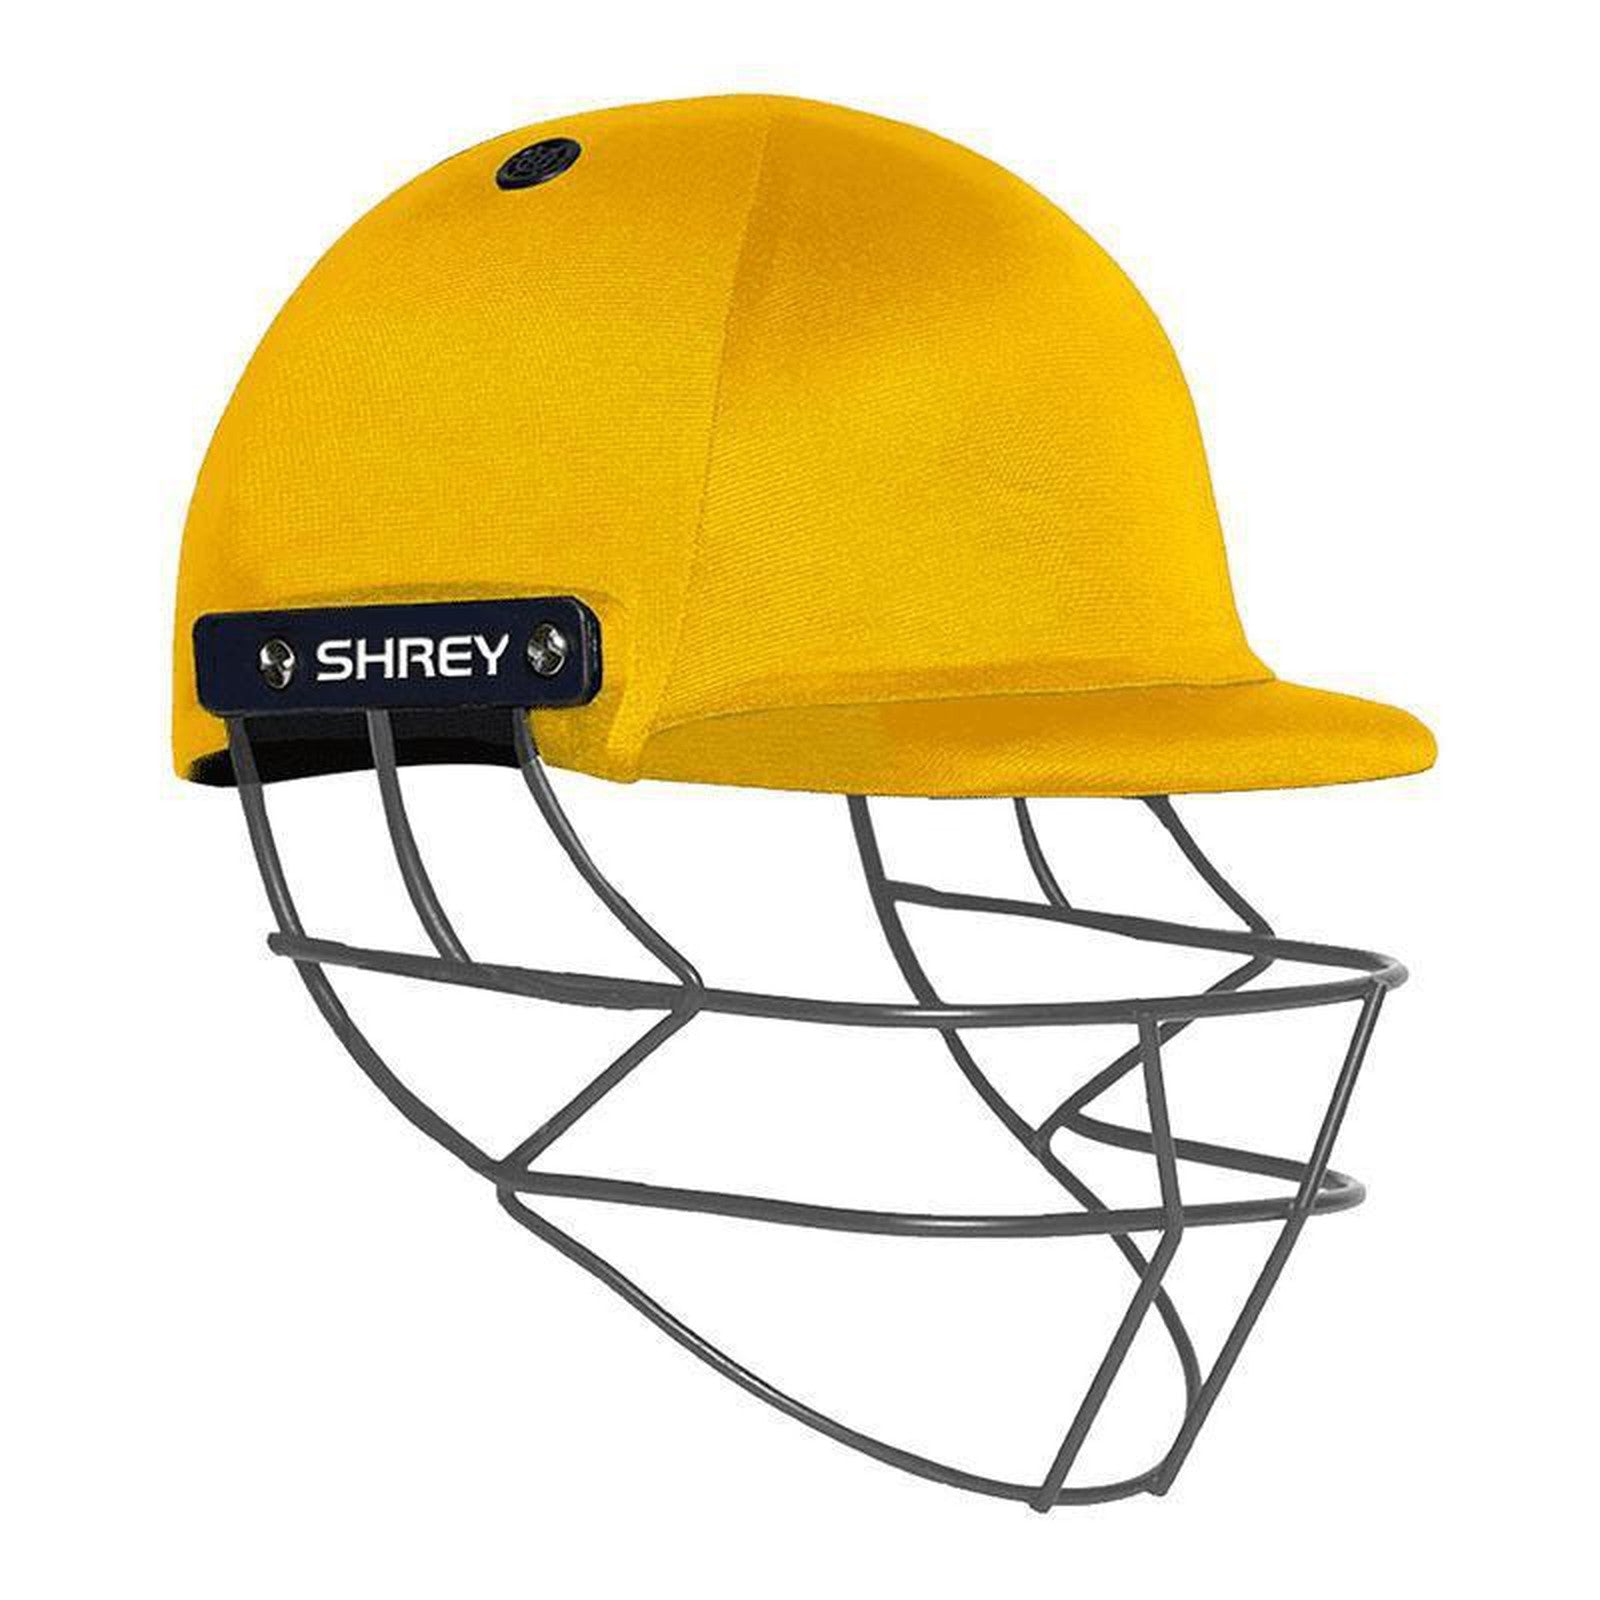 Shrey Performance 2.0 Cricket Helmet With Mild Steel - Yellow Junior